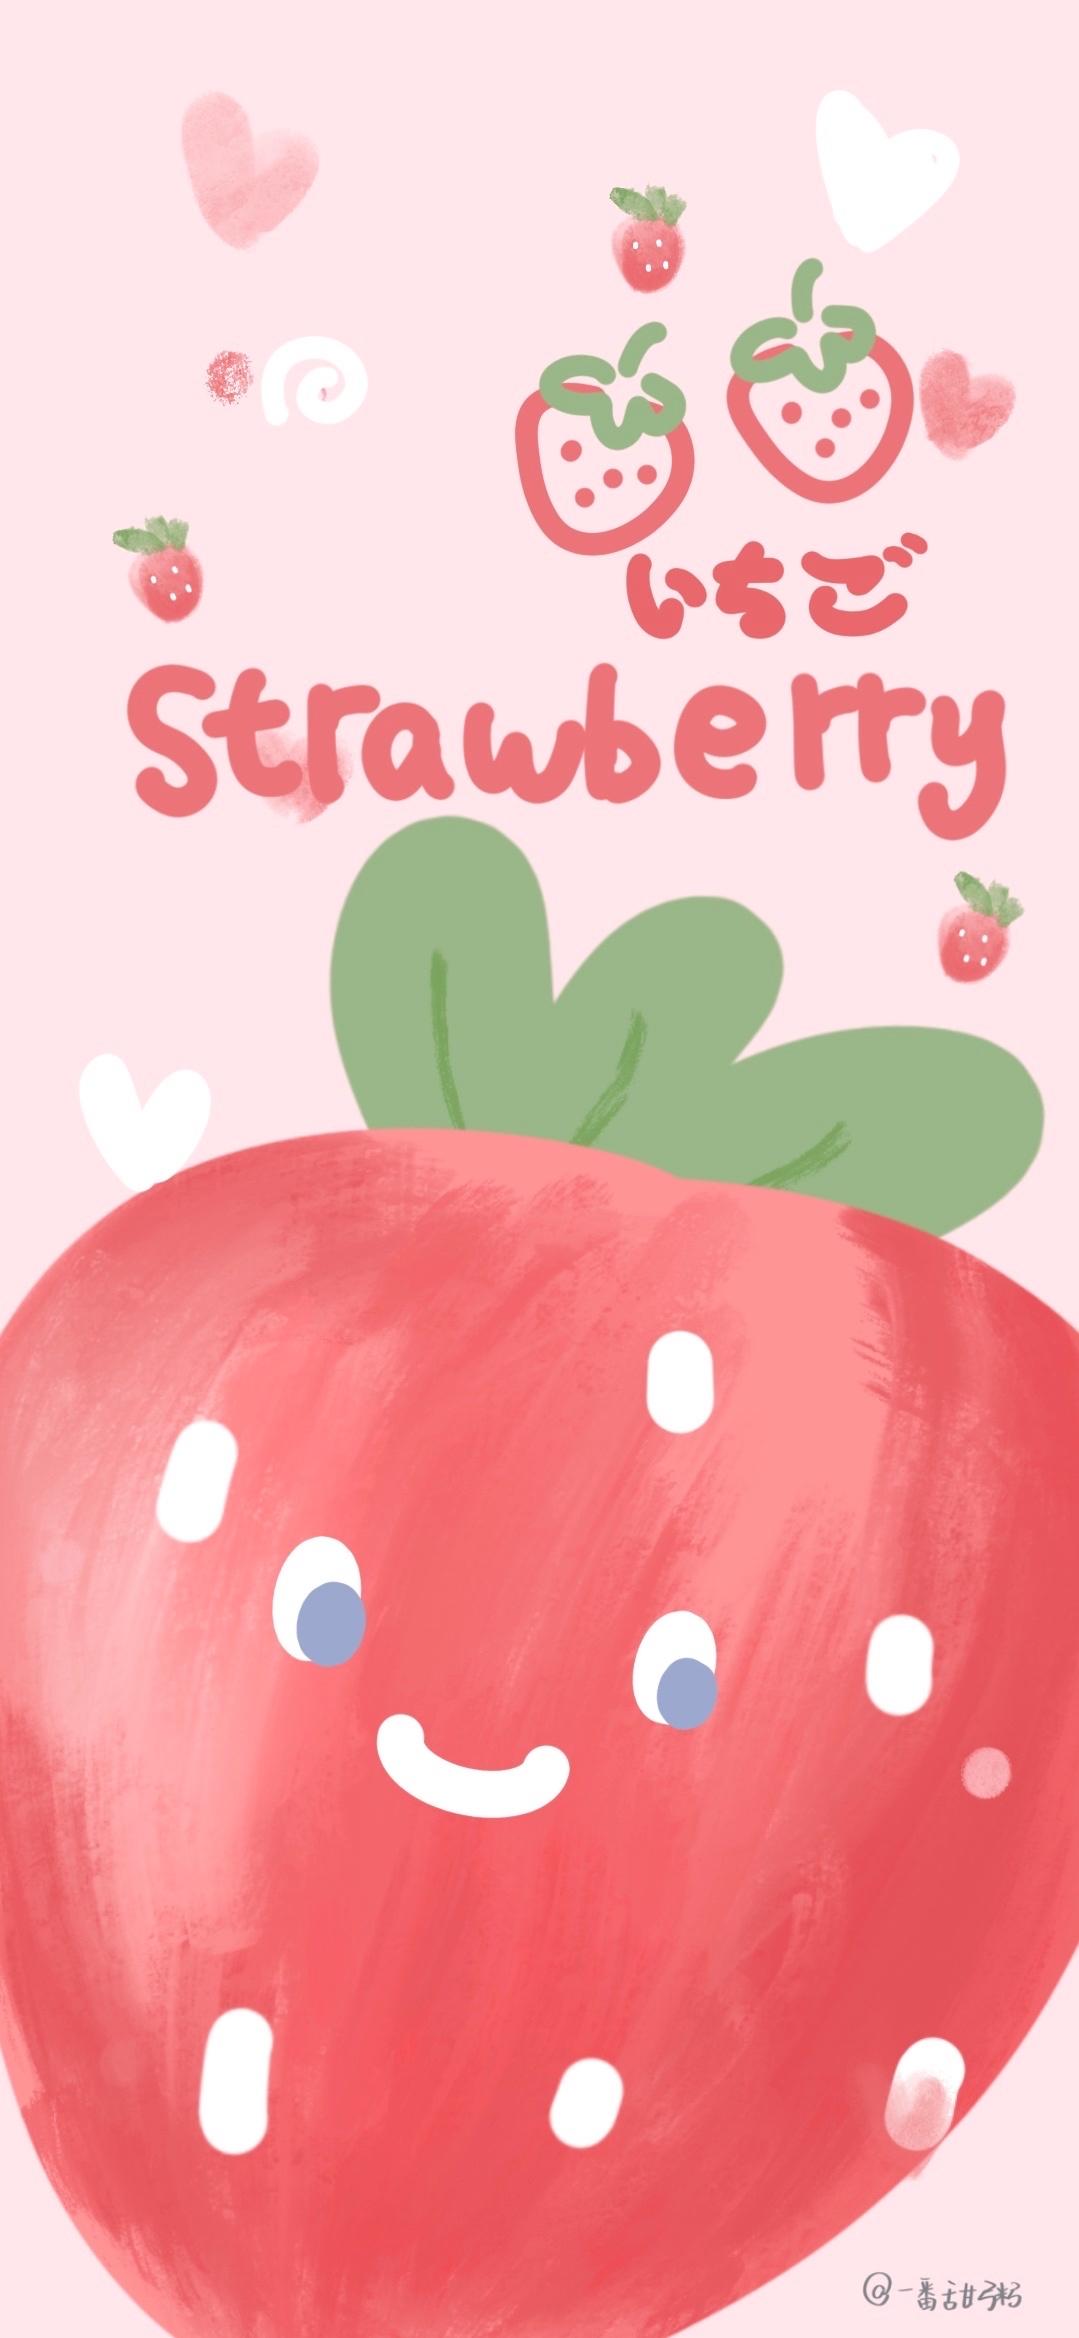 草莓味的夏天 草莓壁纸 水果壁纸